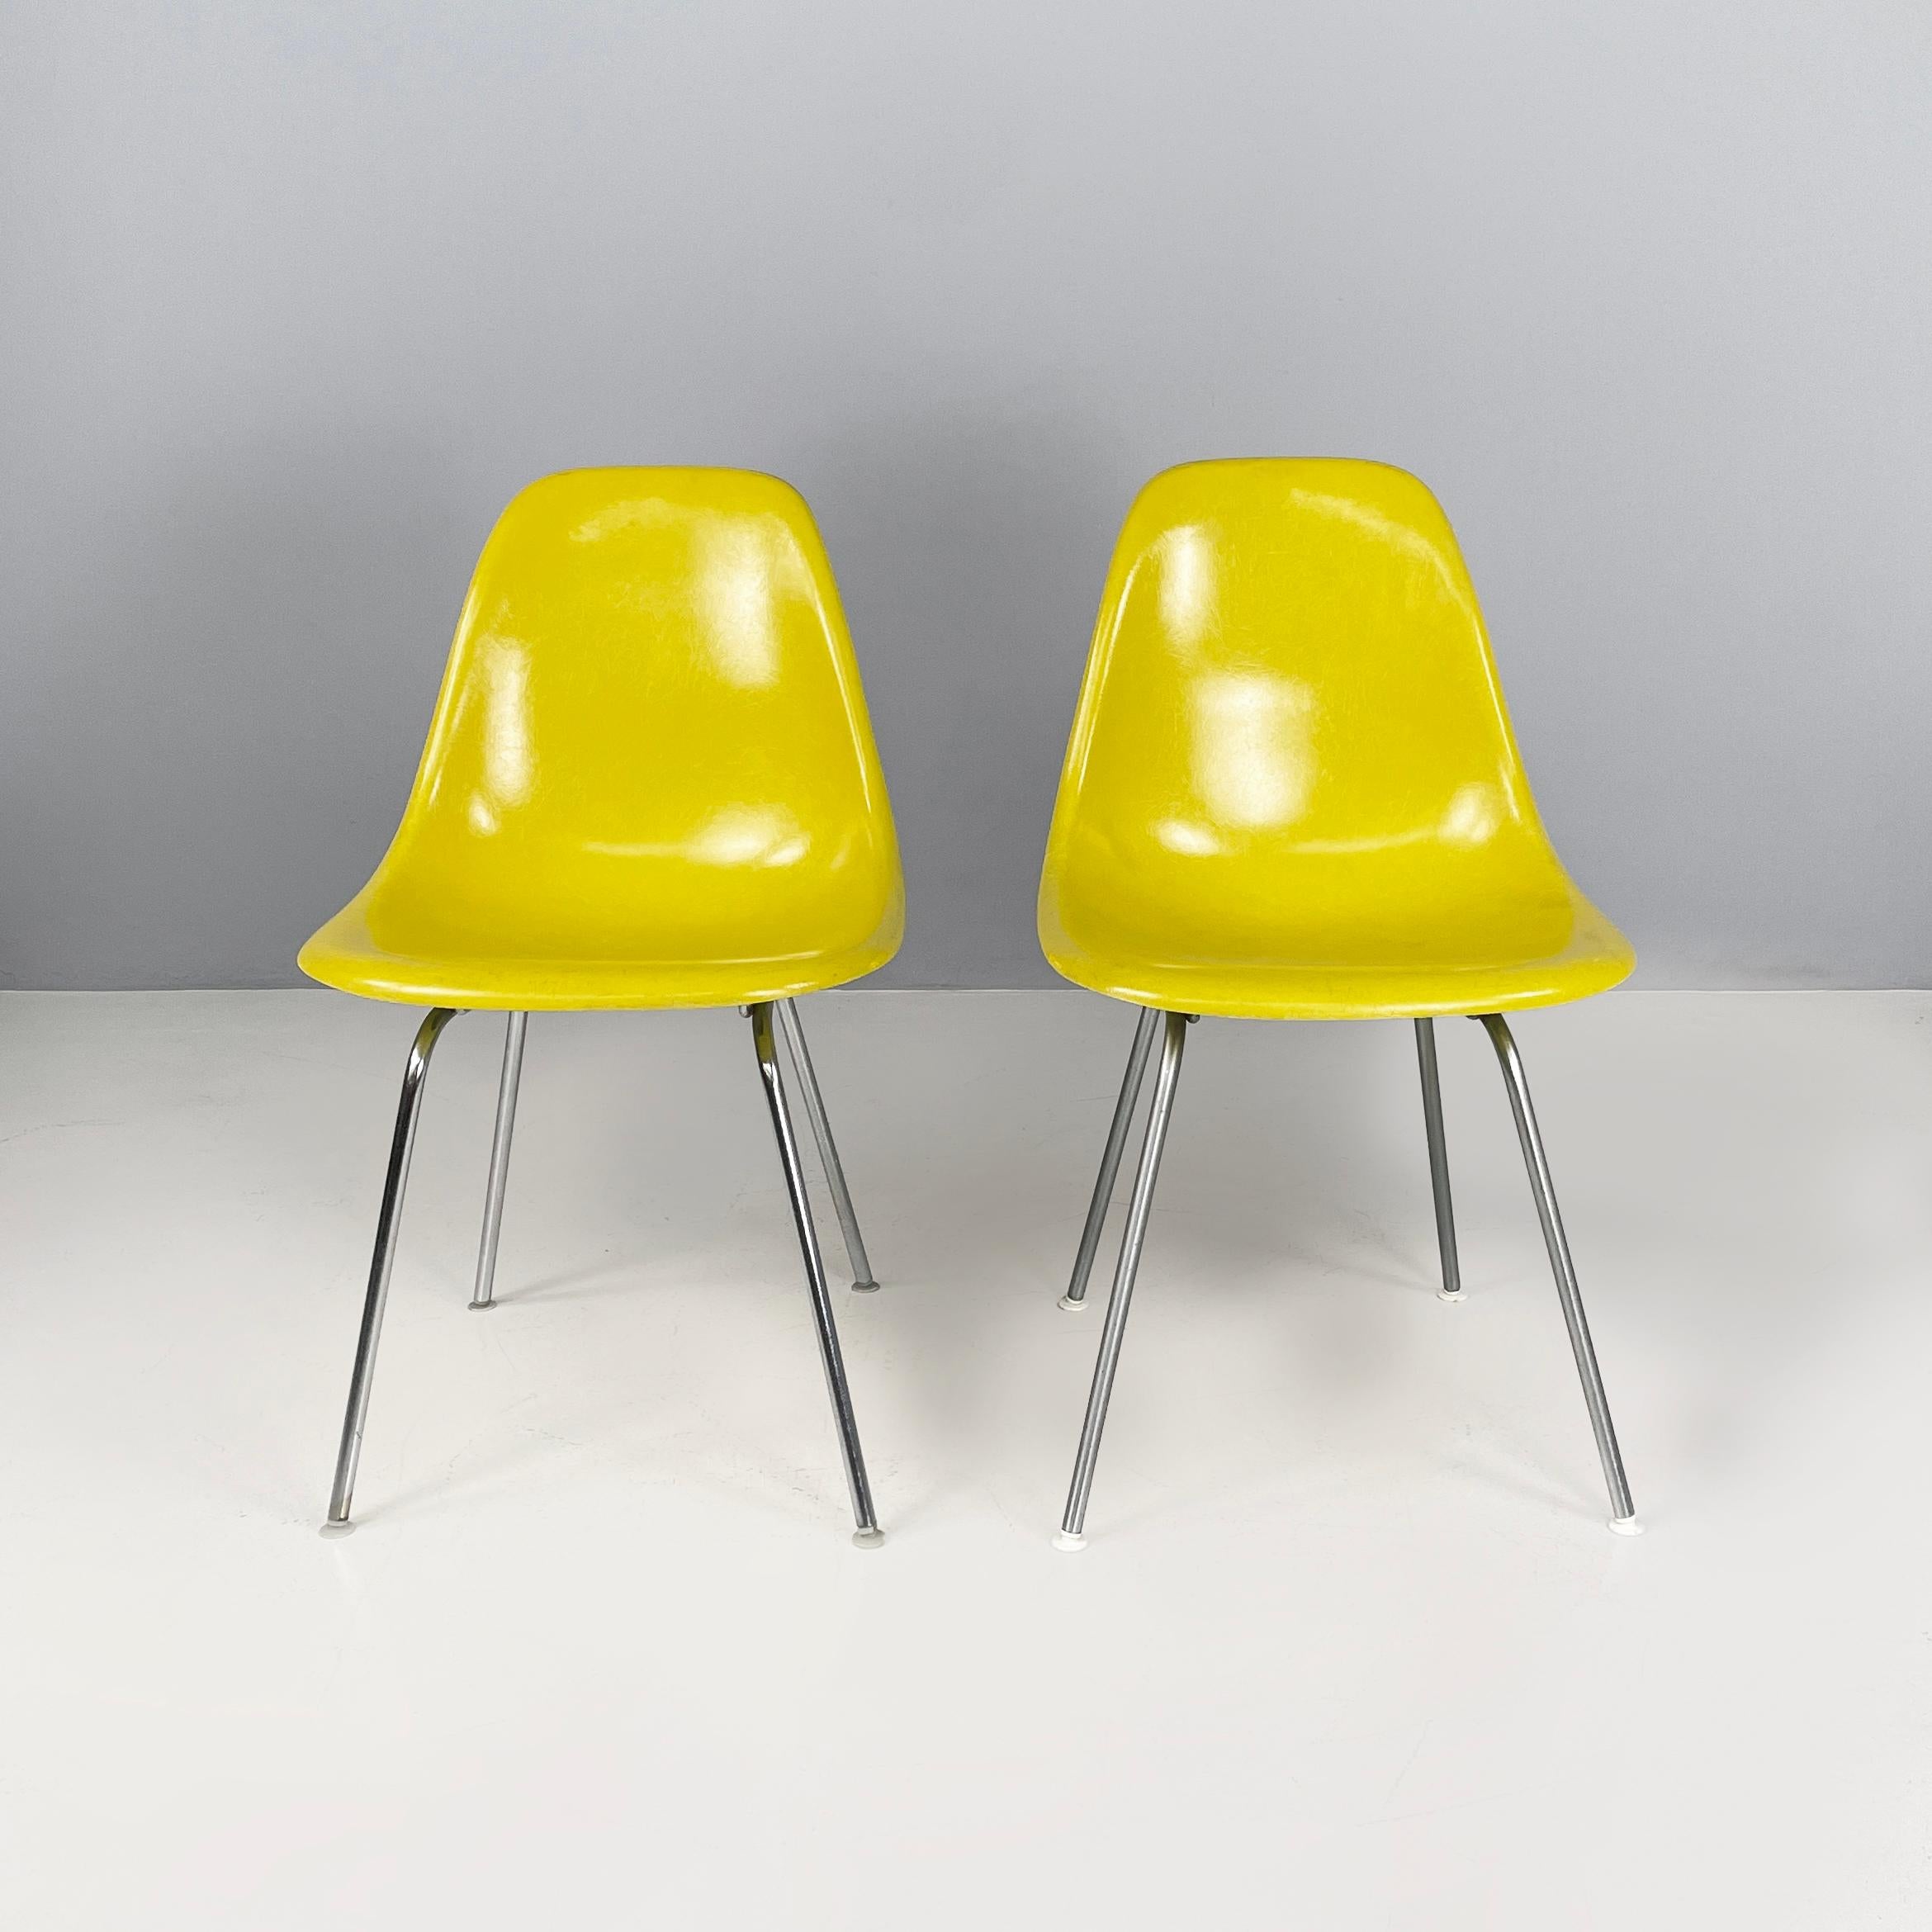 Gelbe Schalenstühle der amerikanischen Moderne von Charles und Ray Eames für Herman Miller, 1970er Jahre
Paar Stühle aus der Serie Shell Chairs mit gebogenem Sitz und Rückenlehne aus gelbem Fiberglas. Die Beine sind aus Metallstäben gefertigt. Runde